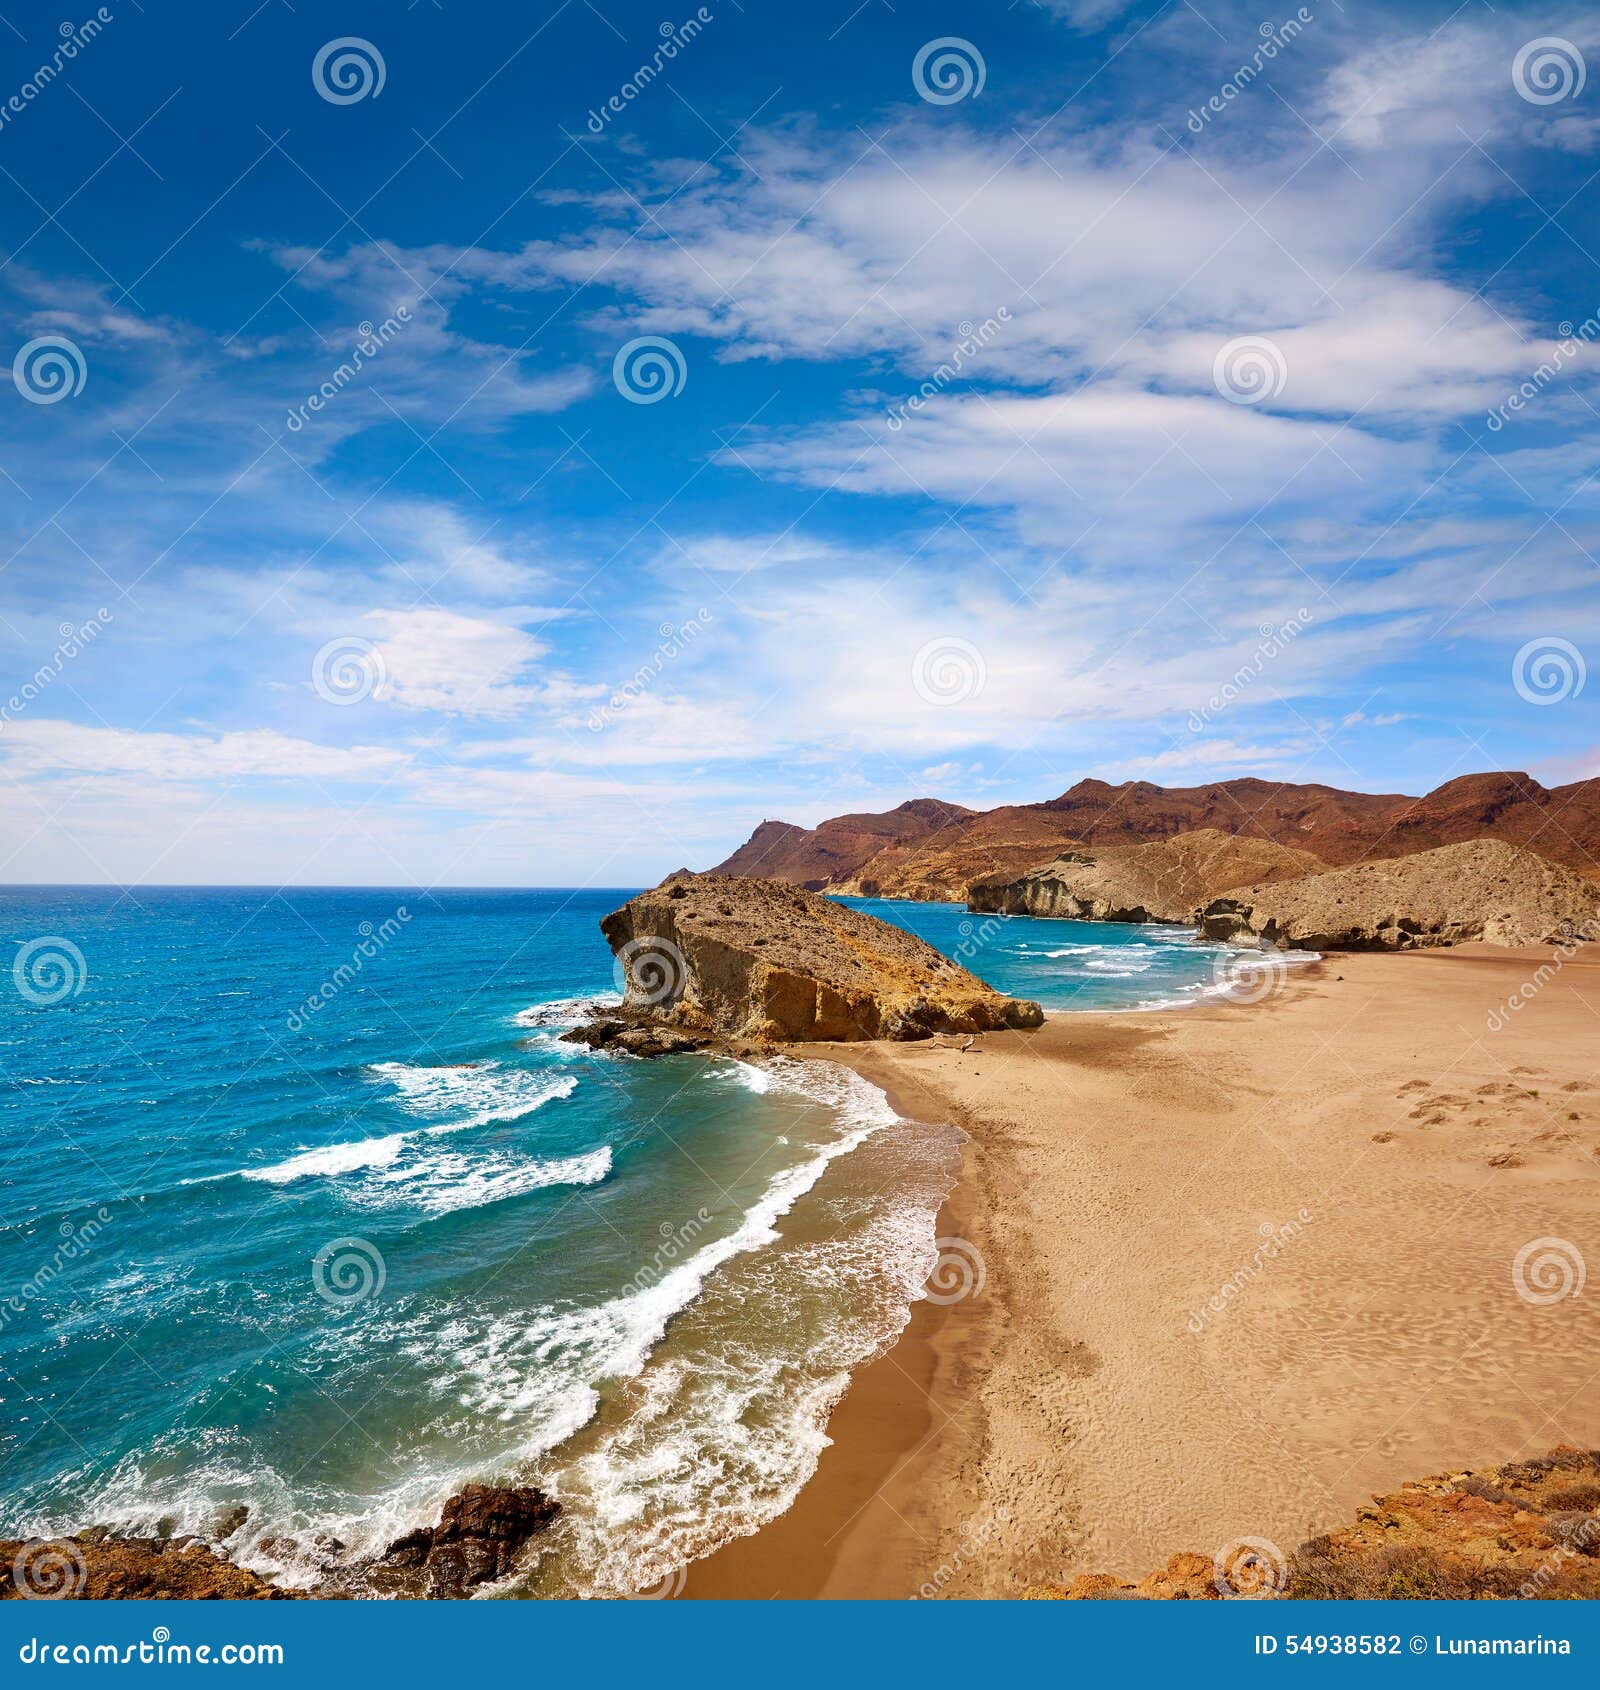 almeria playa del monsul beach at cabo de gata